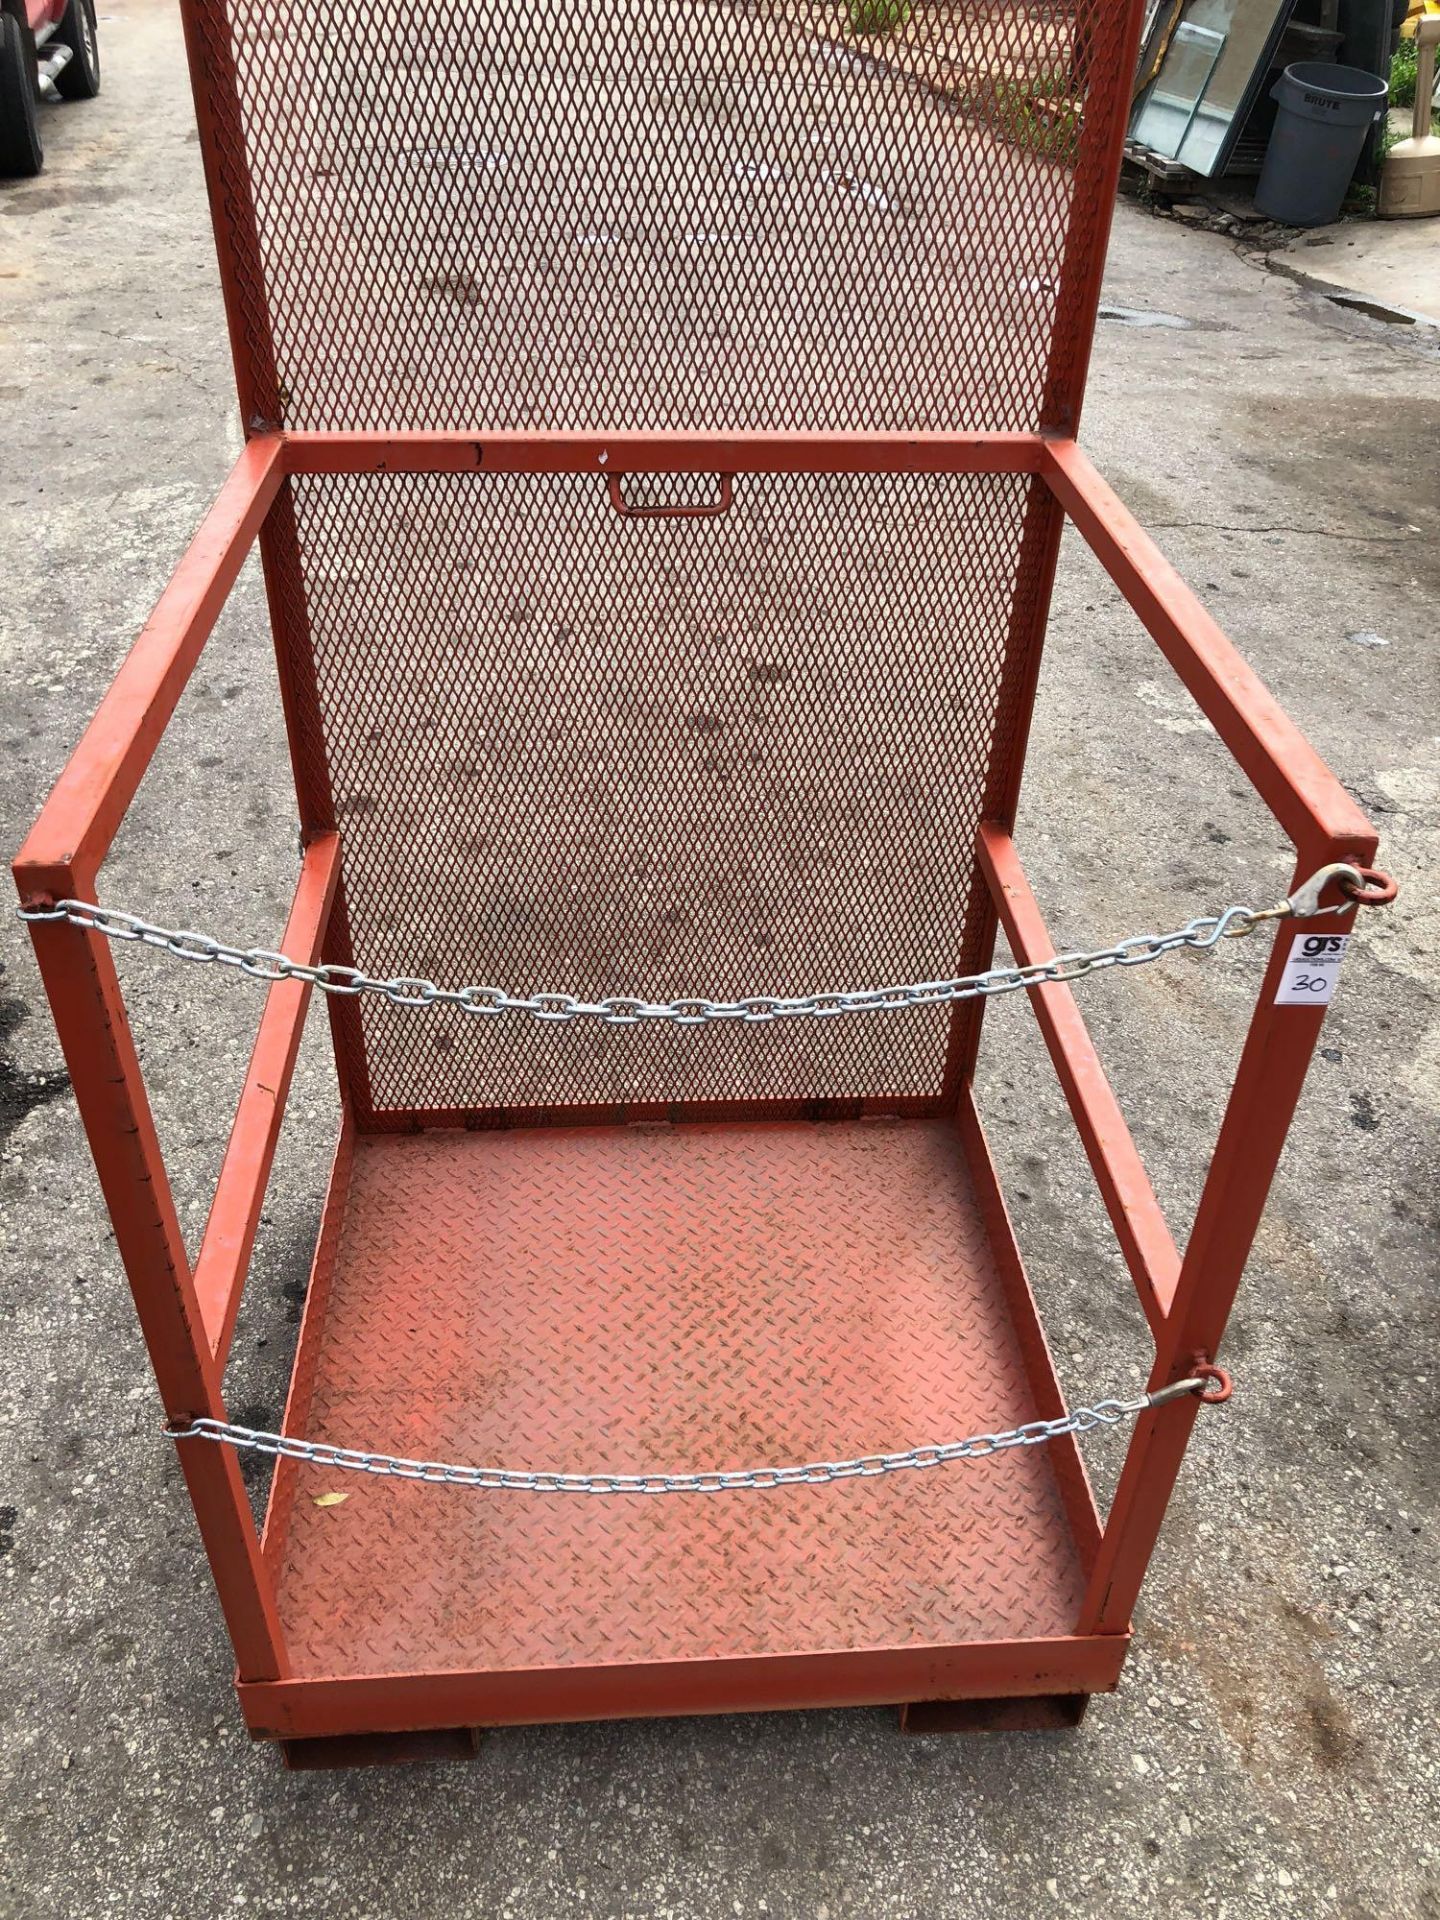 Forklift Cage, Aerial Basket - Image 3 of 3